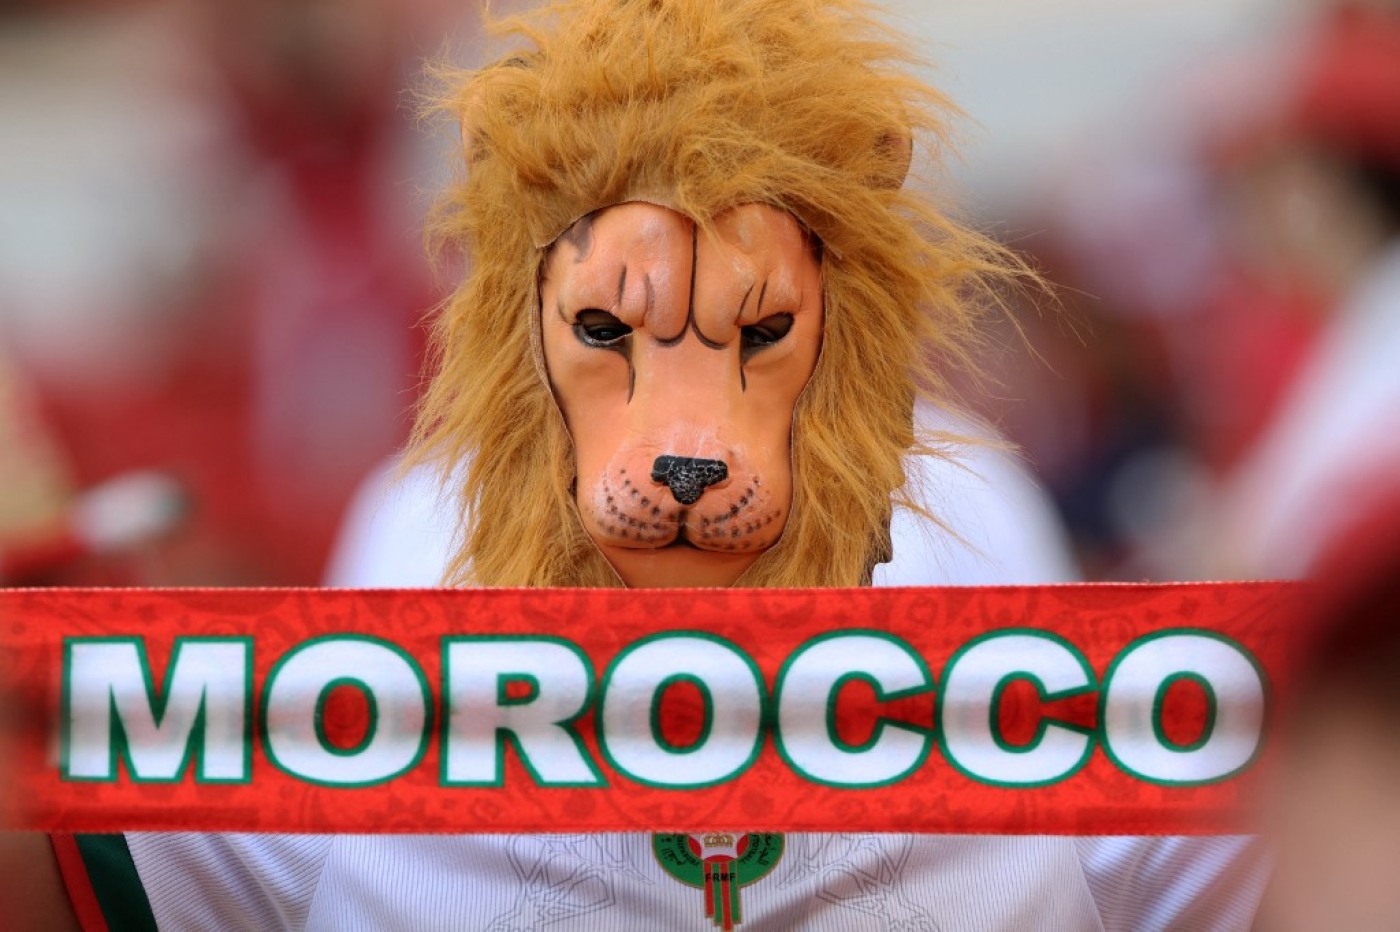 Un supporteur marocain caché derrière un masque de lion alors que l’équipe nationale du Maroc (les Lions de l’Atlas) s’apprête à affronter la Belgique, le 27 novembre 2022 à Doha (AFP/Fadel Senna)